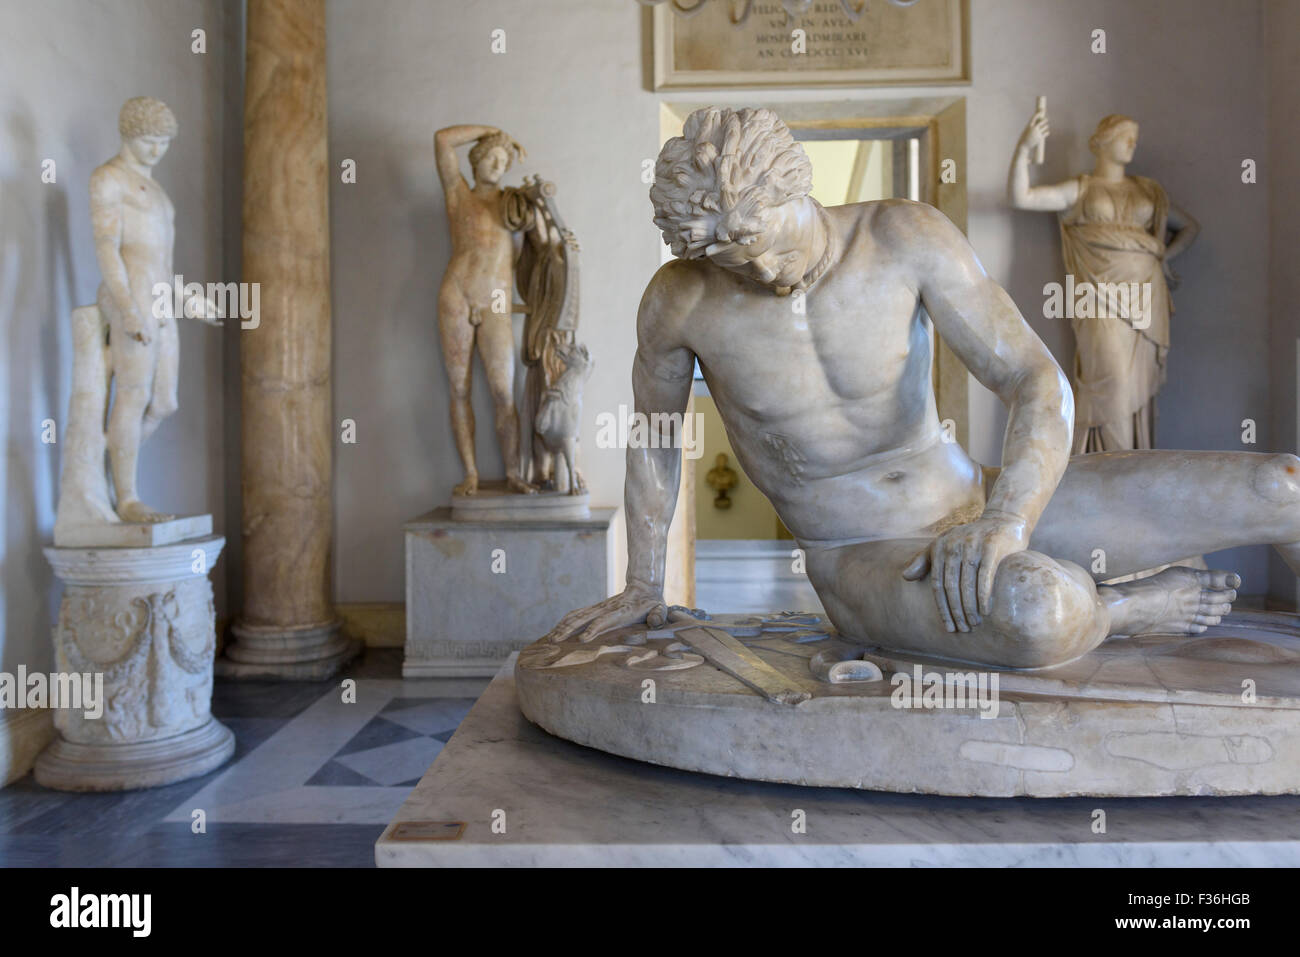 Roma. Italia. El Museo Capitolino. El Galo moribundo (Gladiador), copia romana de un original griego de la 3a.C.. Foto de stock